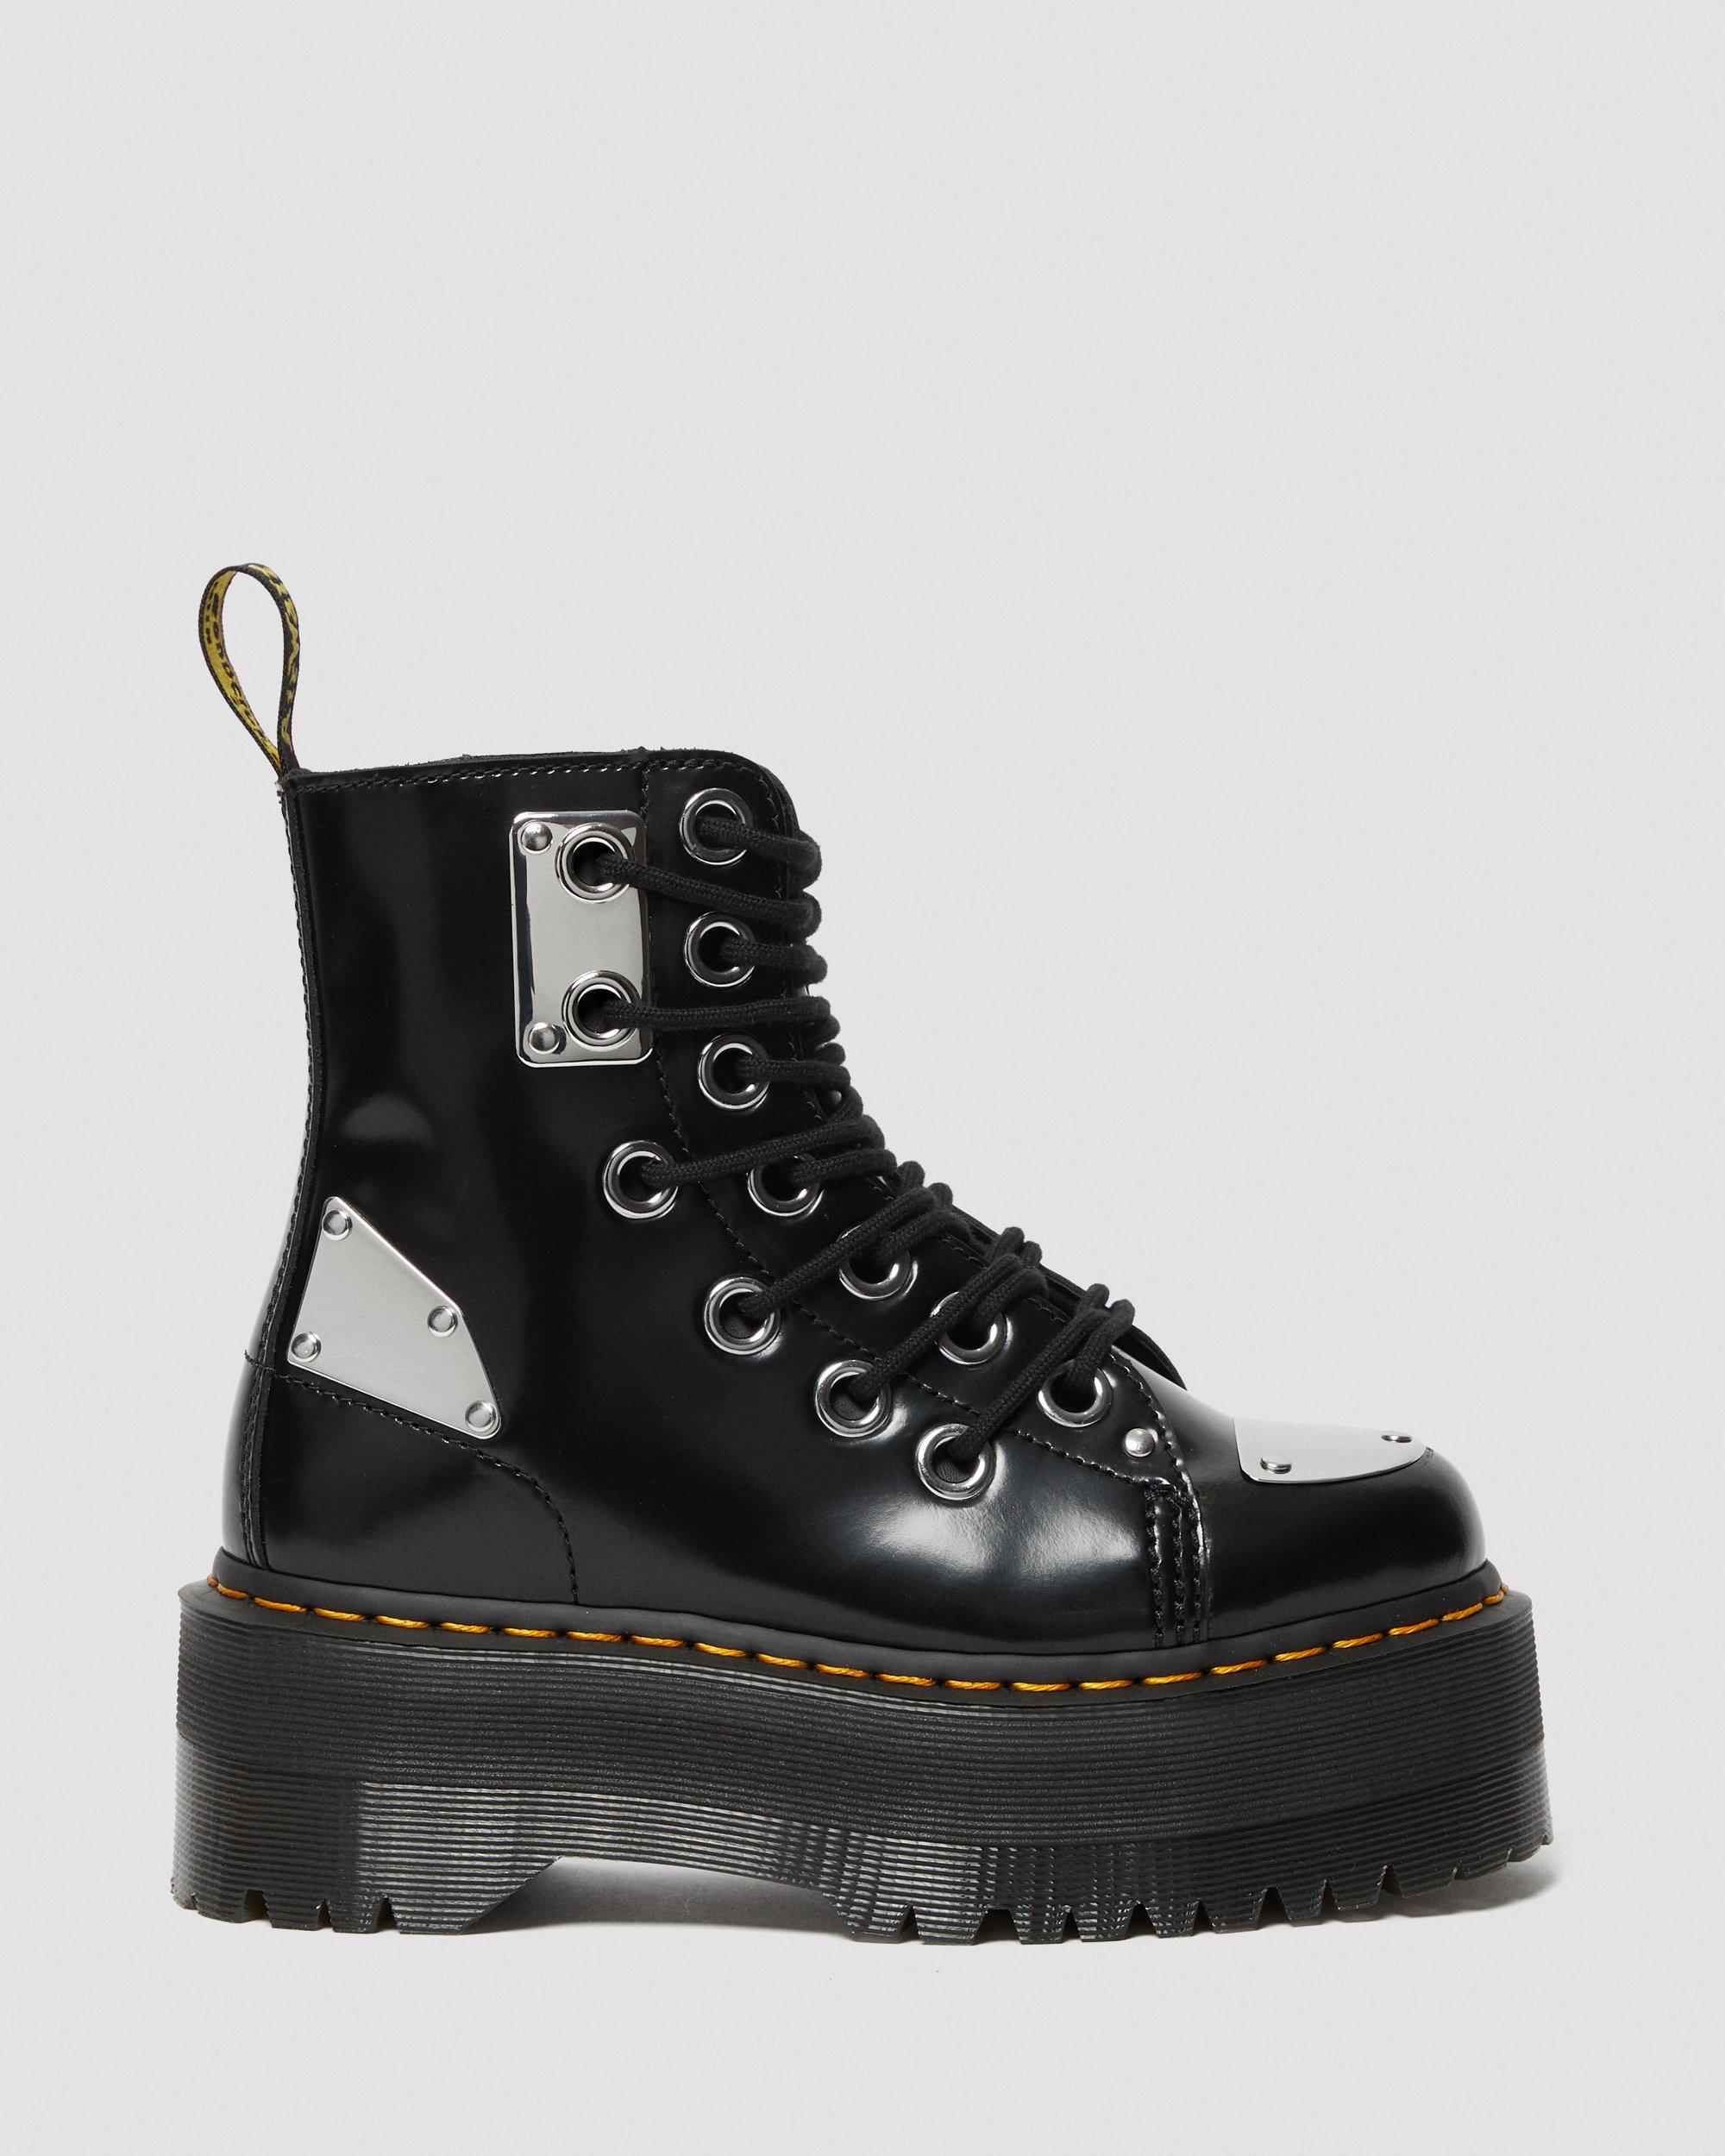 Jadon Max Metal Leather Platform Boots, Black | Dr. Martens